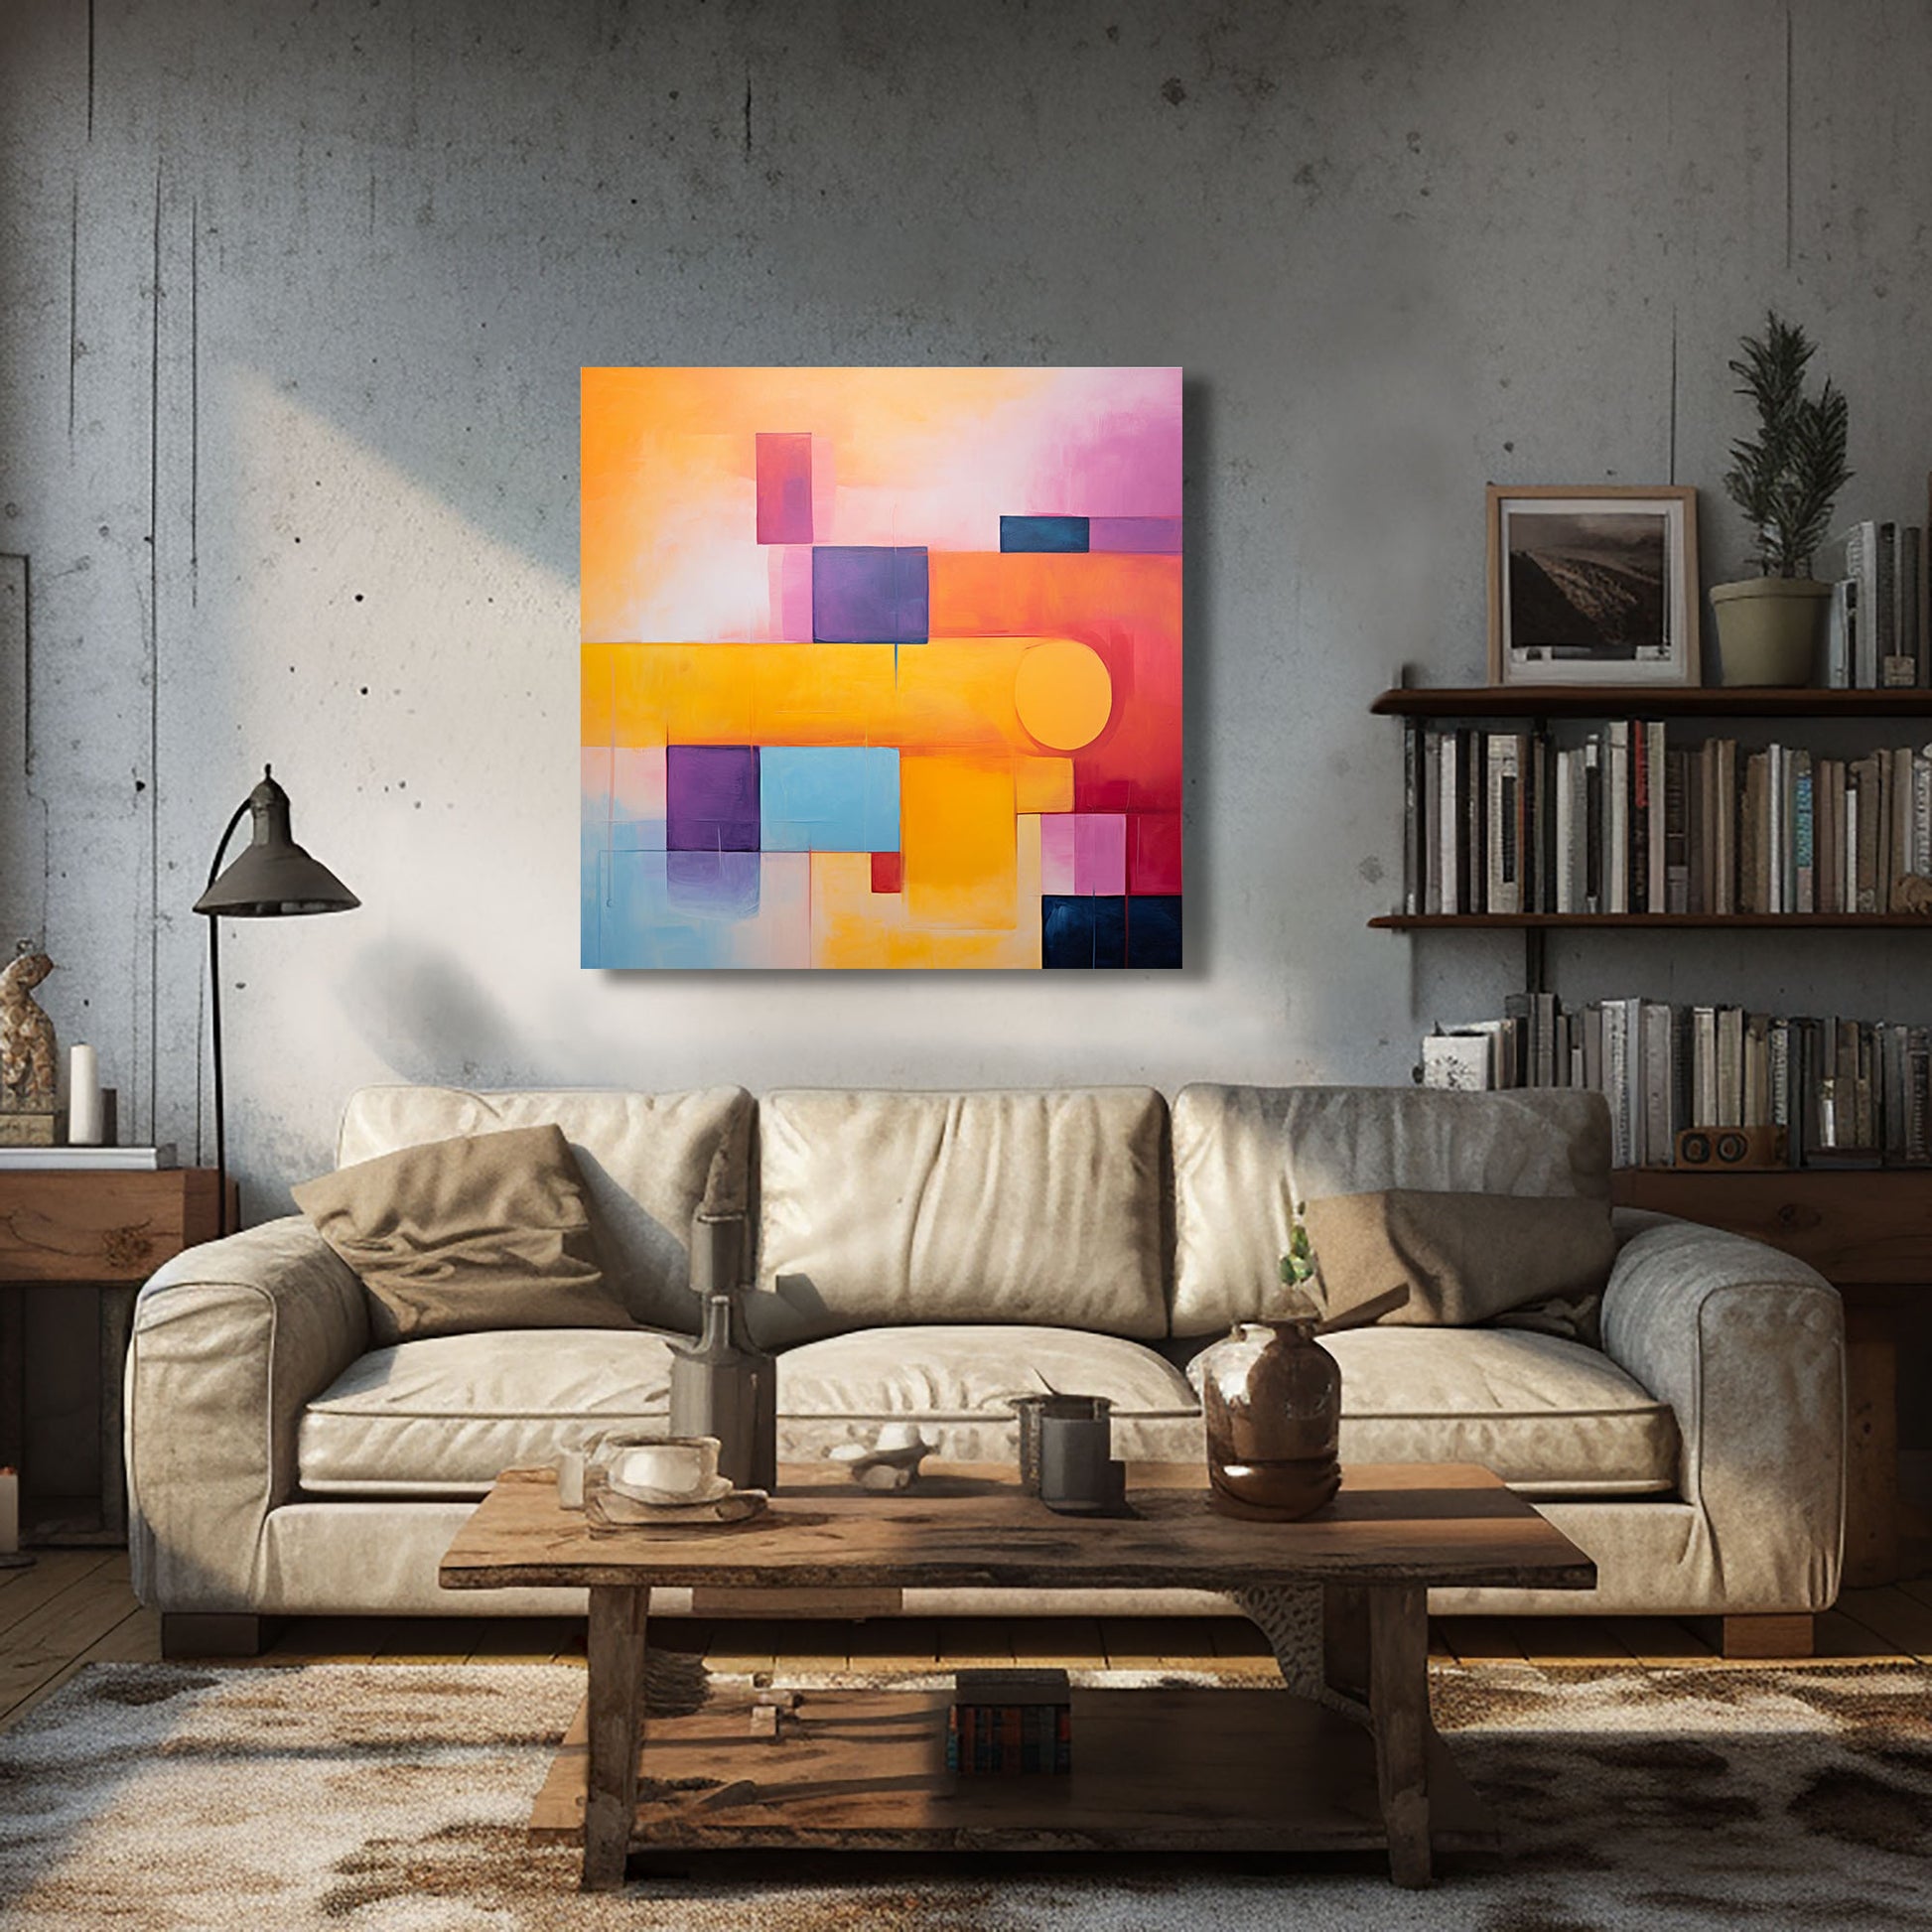 Arte abstracto con diseño geométrico en colores amarillo, naranja, púrpura y azul.